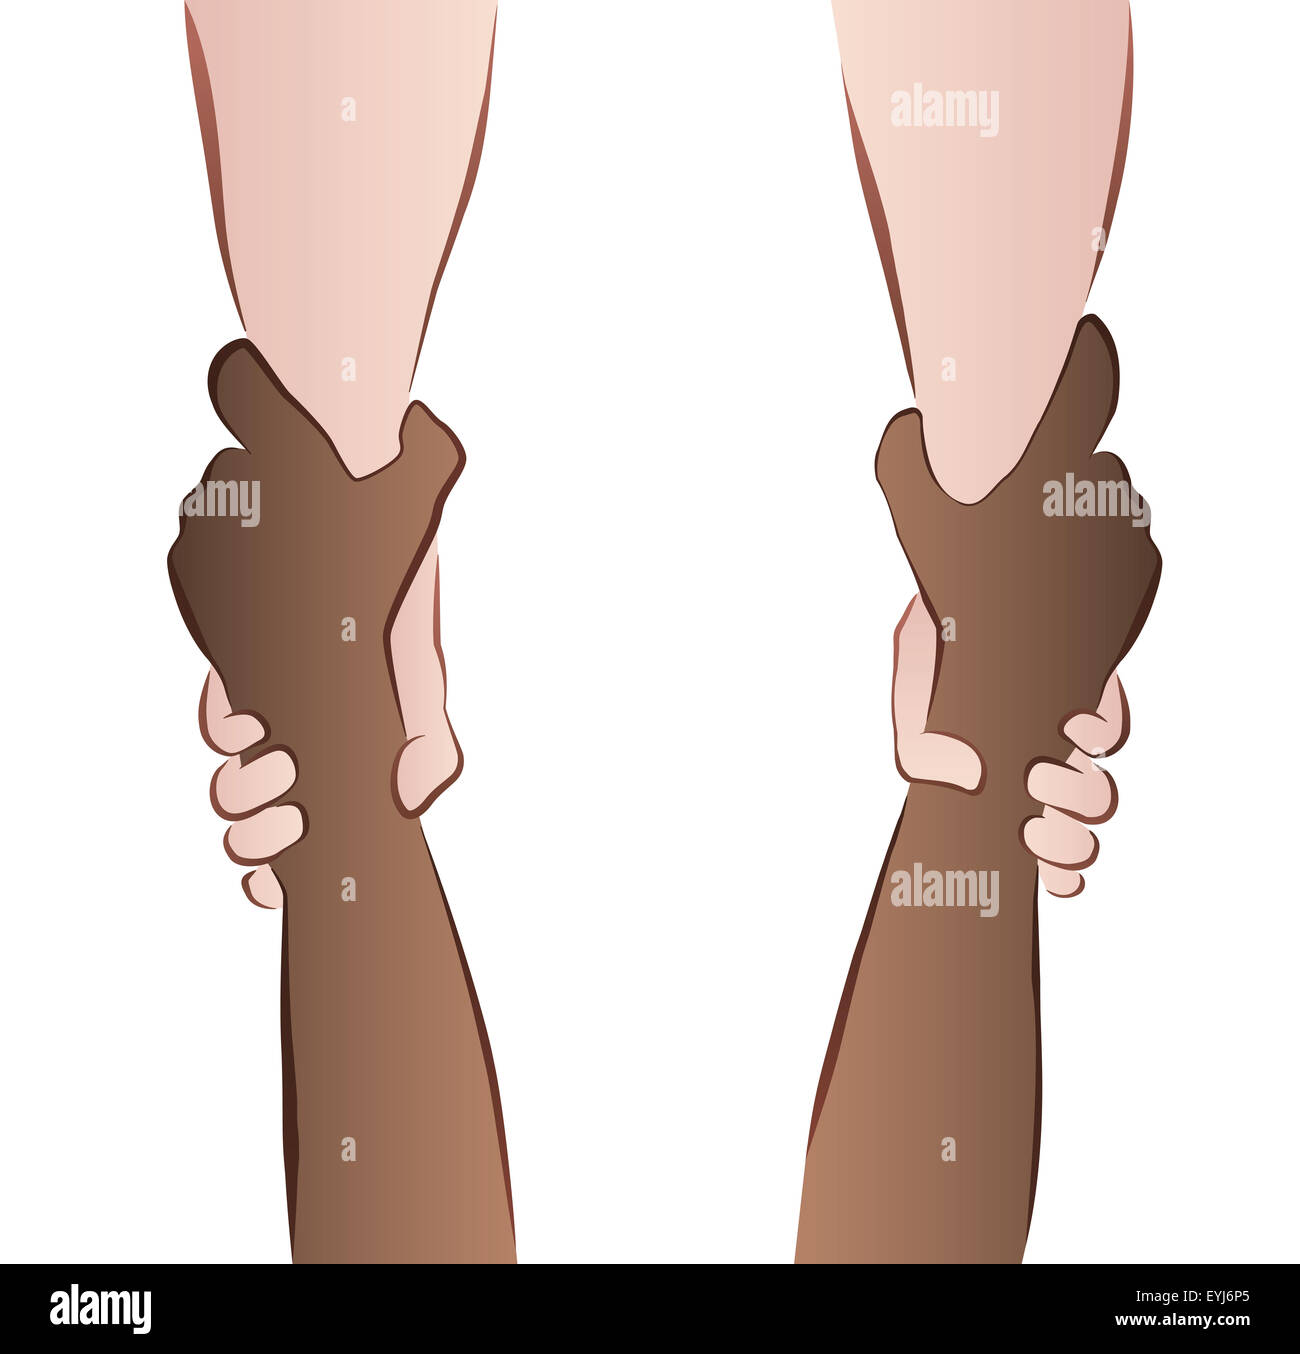 Cooperación Interracial - ahorro de manos - Agarre de rescate. Ilustración sobre fondo blanco. Foto de stock